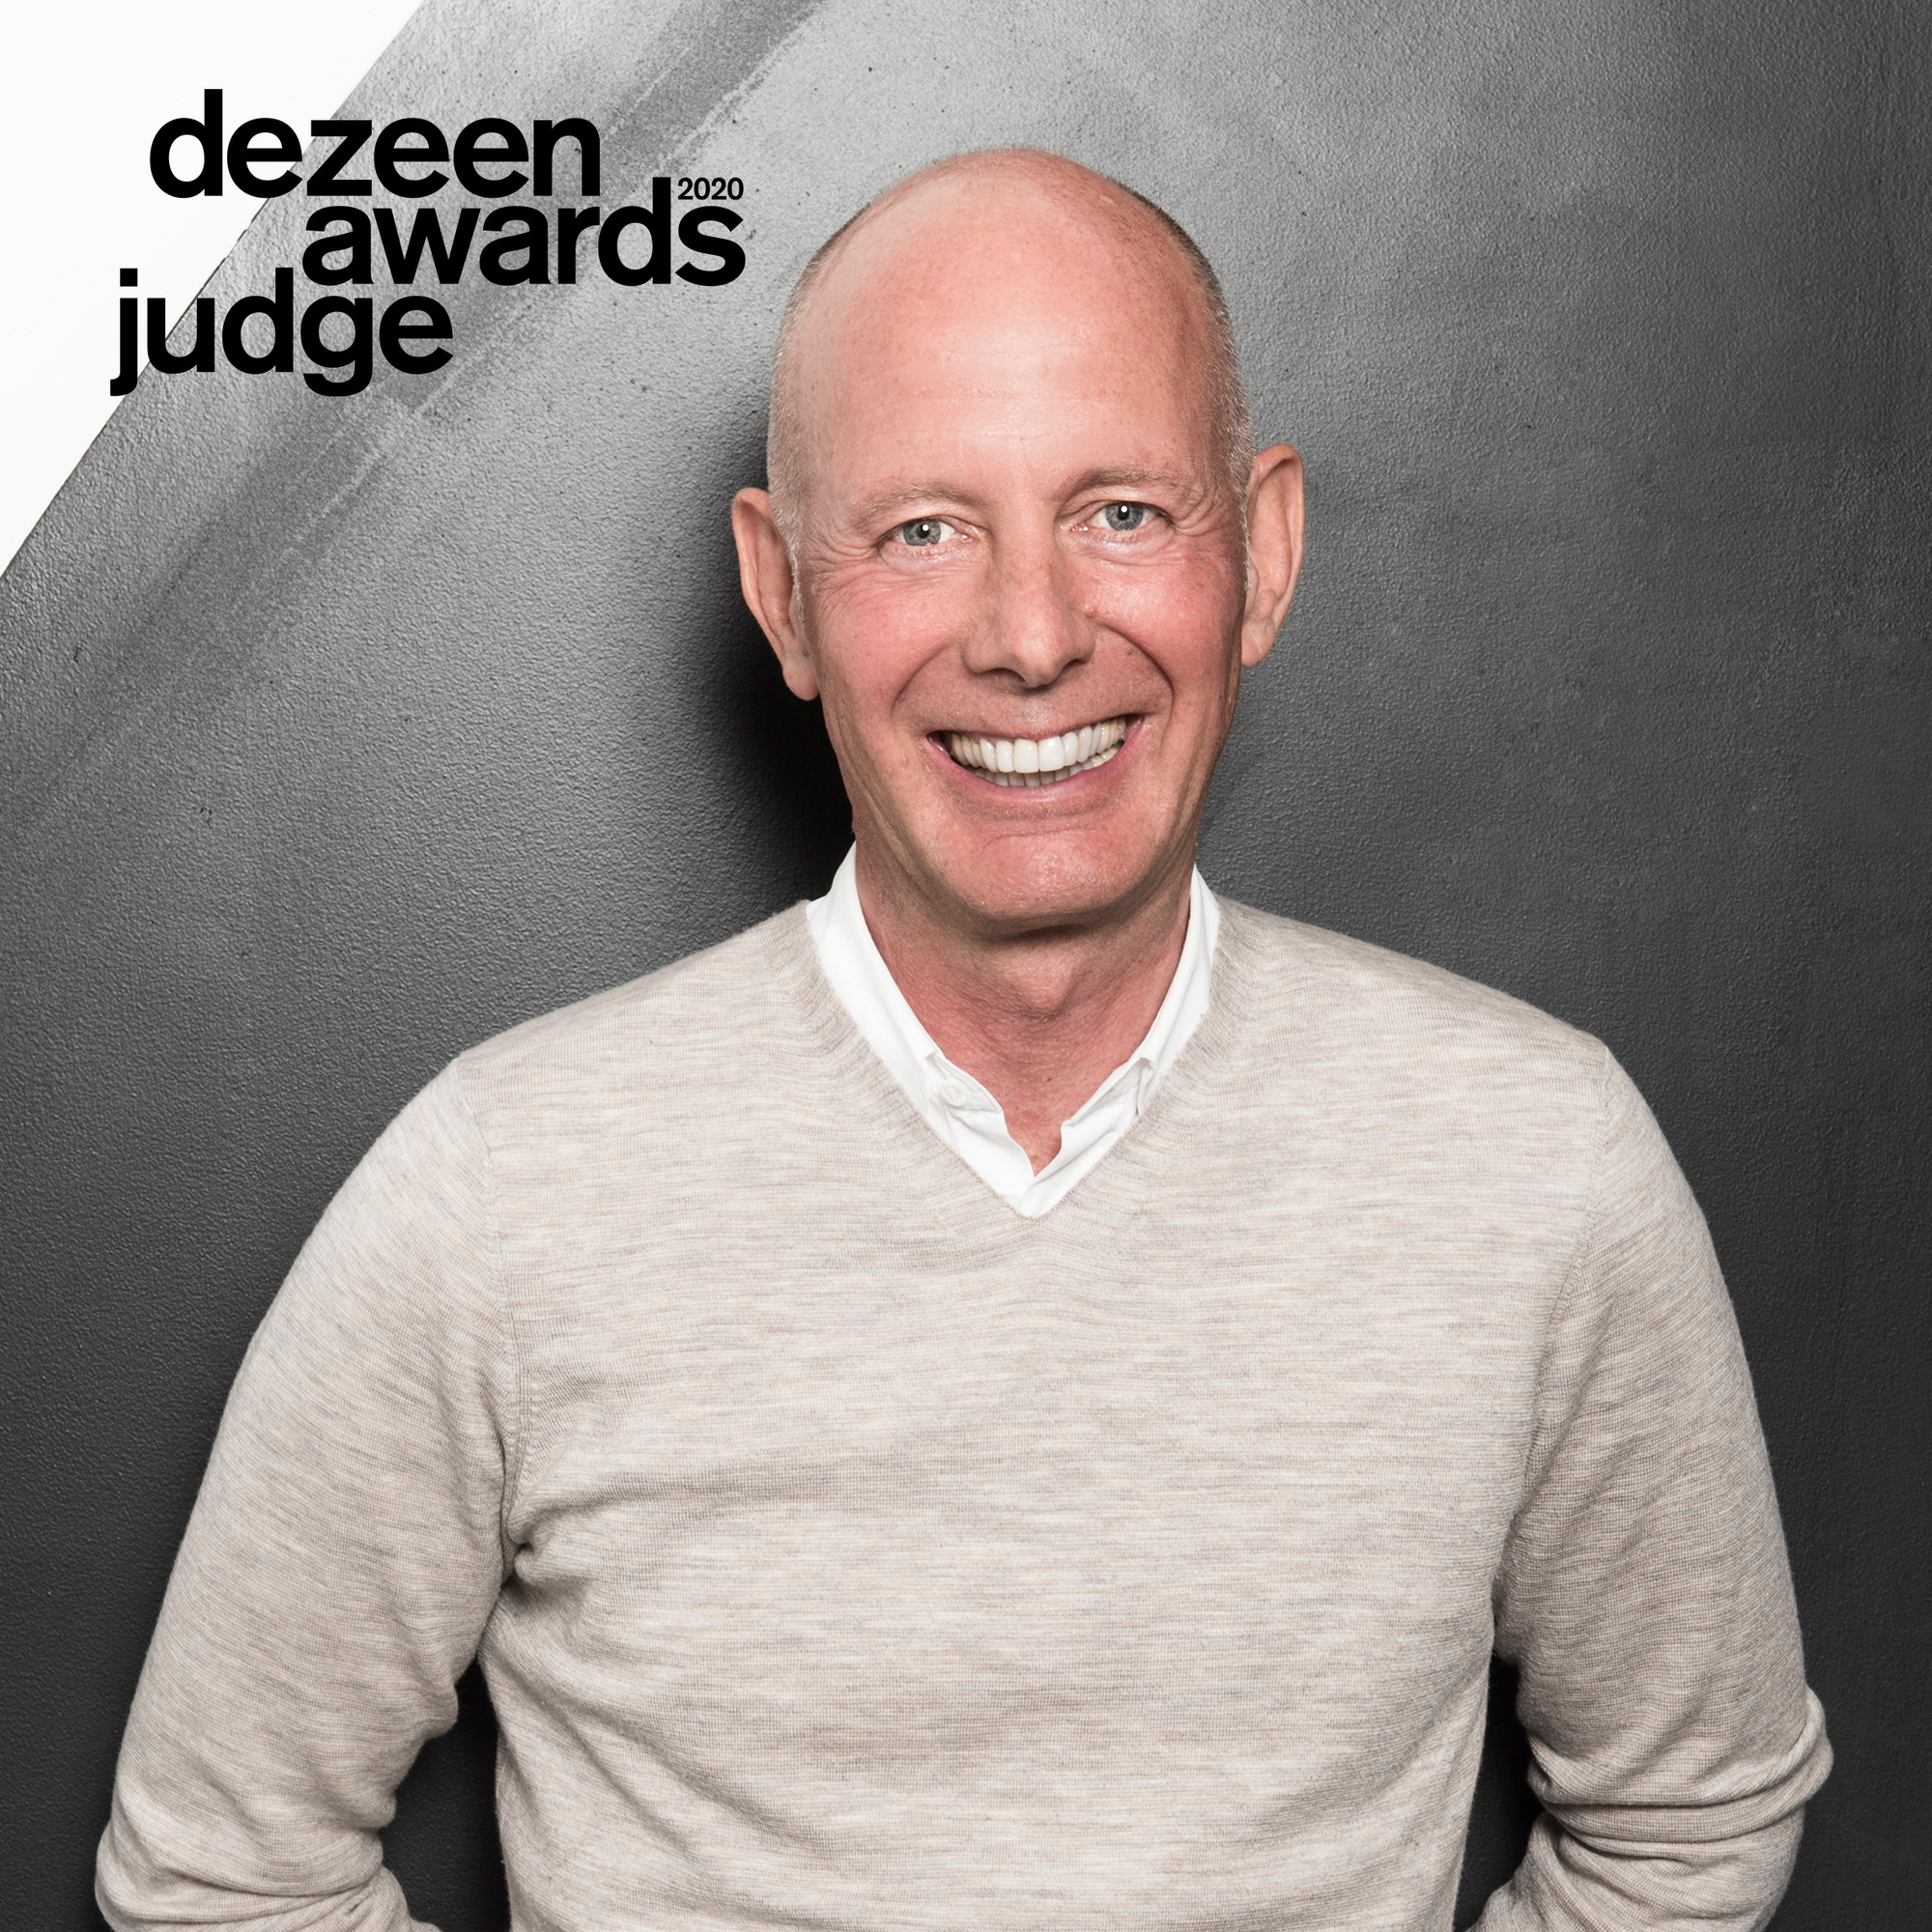 Ben van Berkel announced as Dezeen Awards Judge